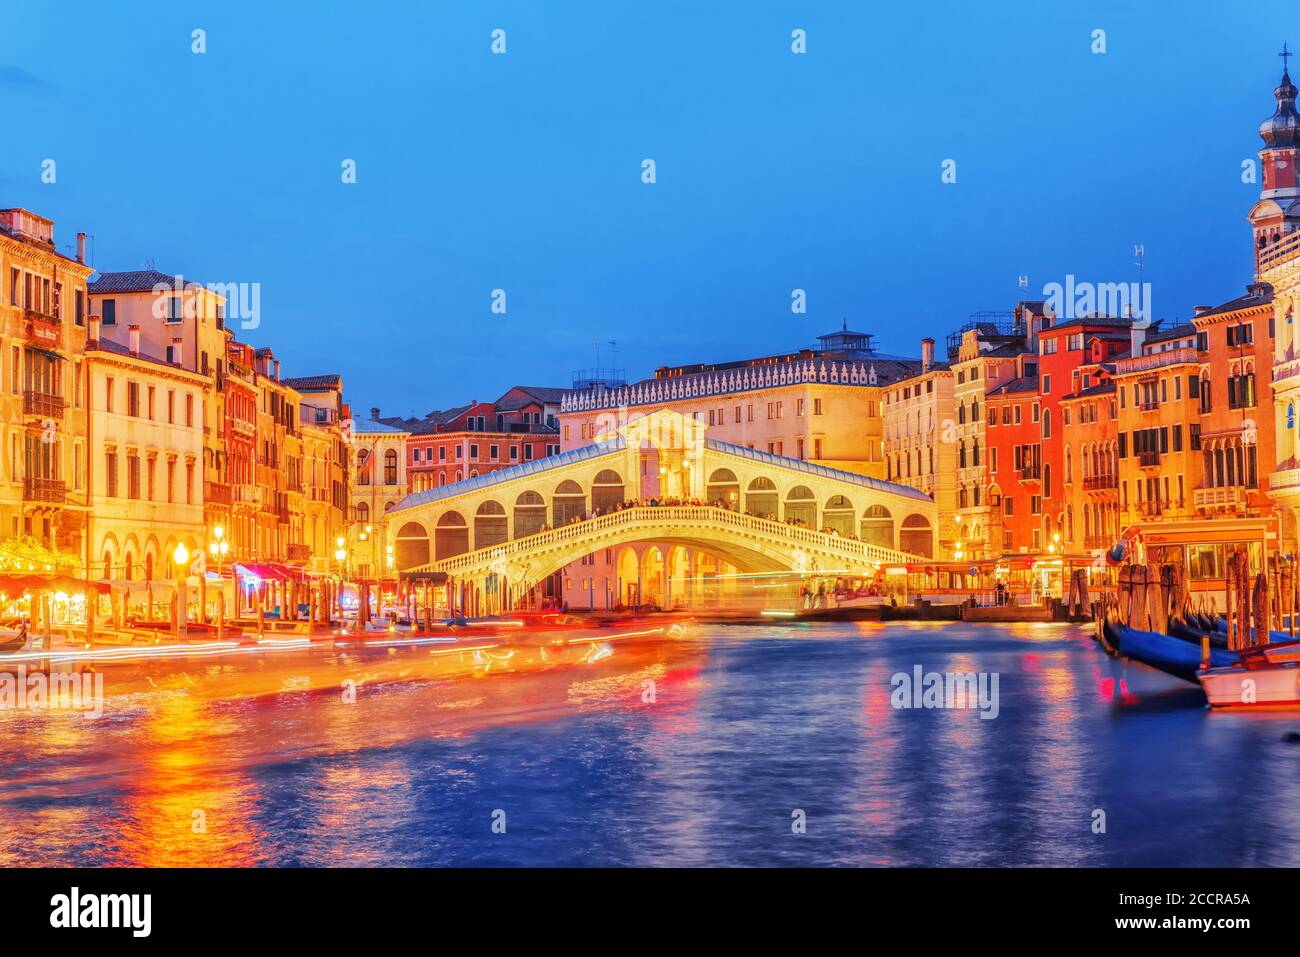 Il Ponte di Rialto (Ponte di Rialto) o Ponte dei Sospiri e la vista di uno dei più bei canali di Venezia - Grand Canal e barche e gondole, palazzi lungo. N Foto Stock